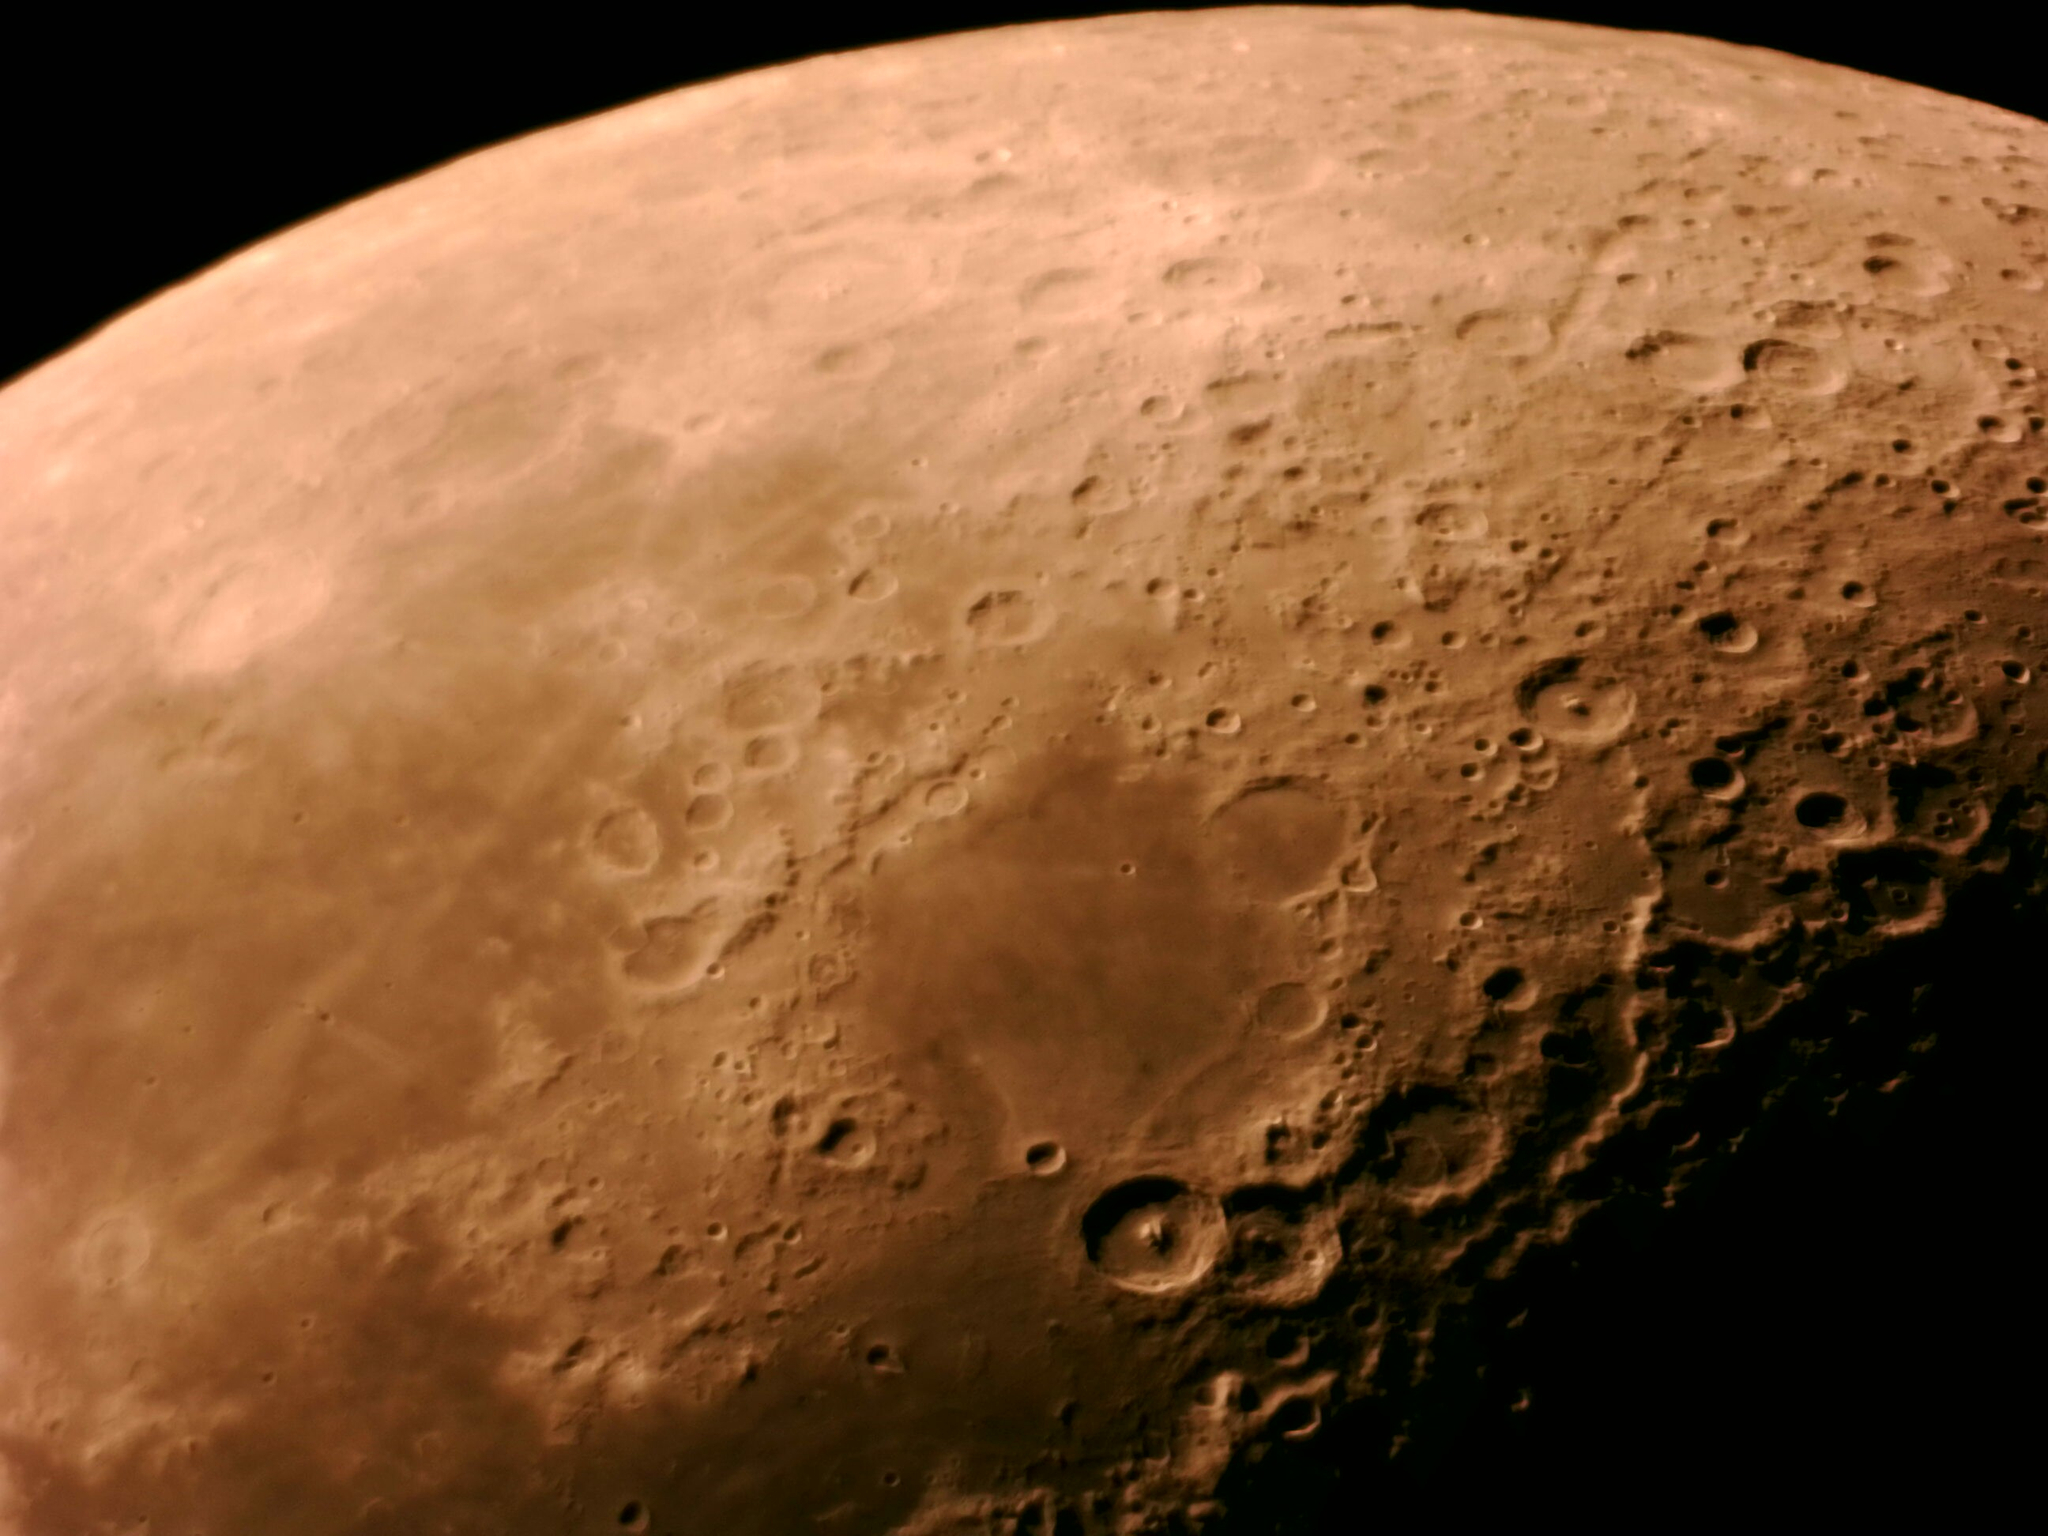 Một vài bức ảnh chi tiết bề mặt mặt trăng chụp ngày 19/1 qua kính thiên văn tự chế 12.5inch phản...